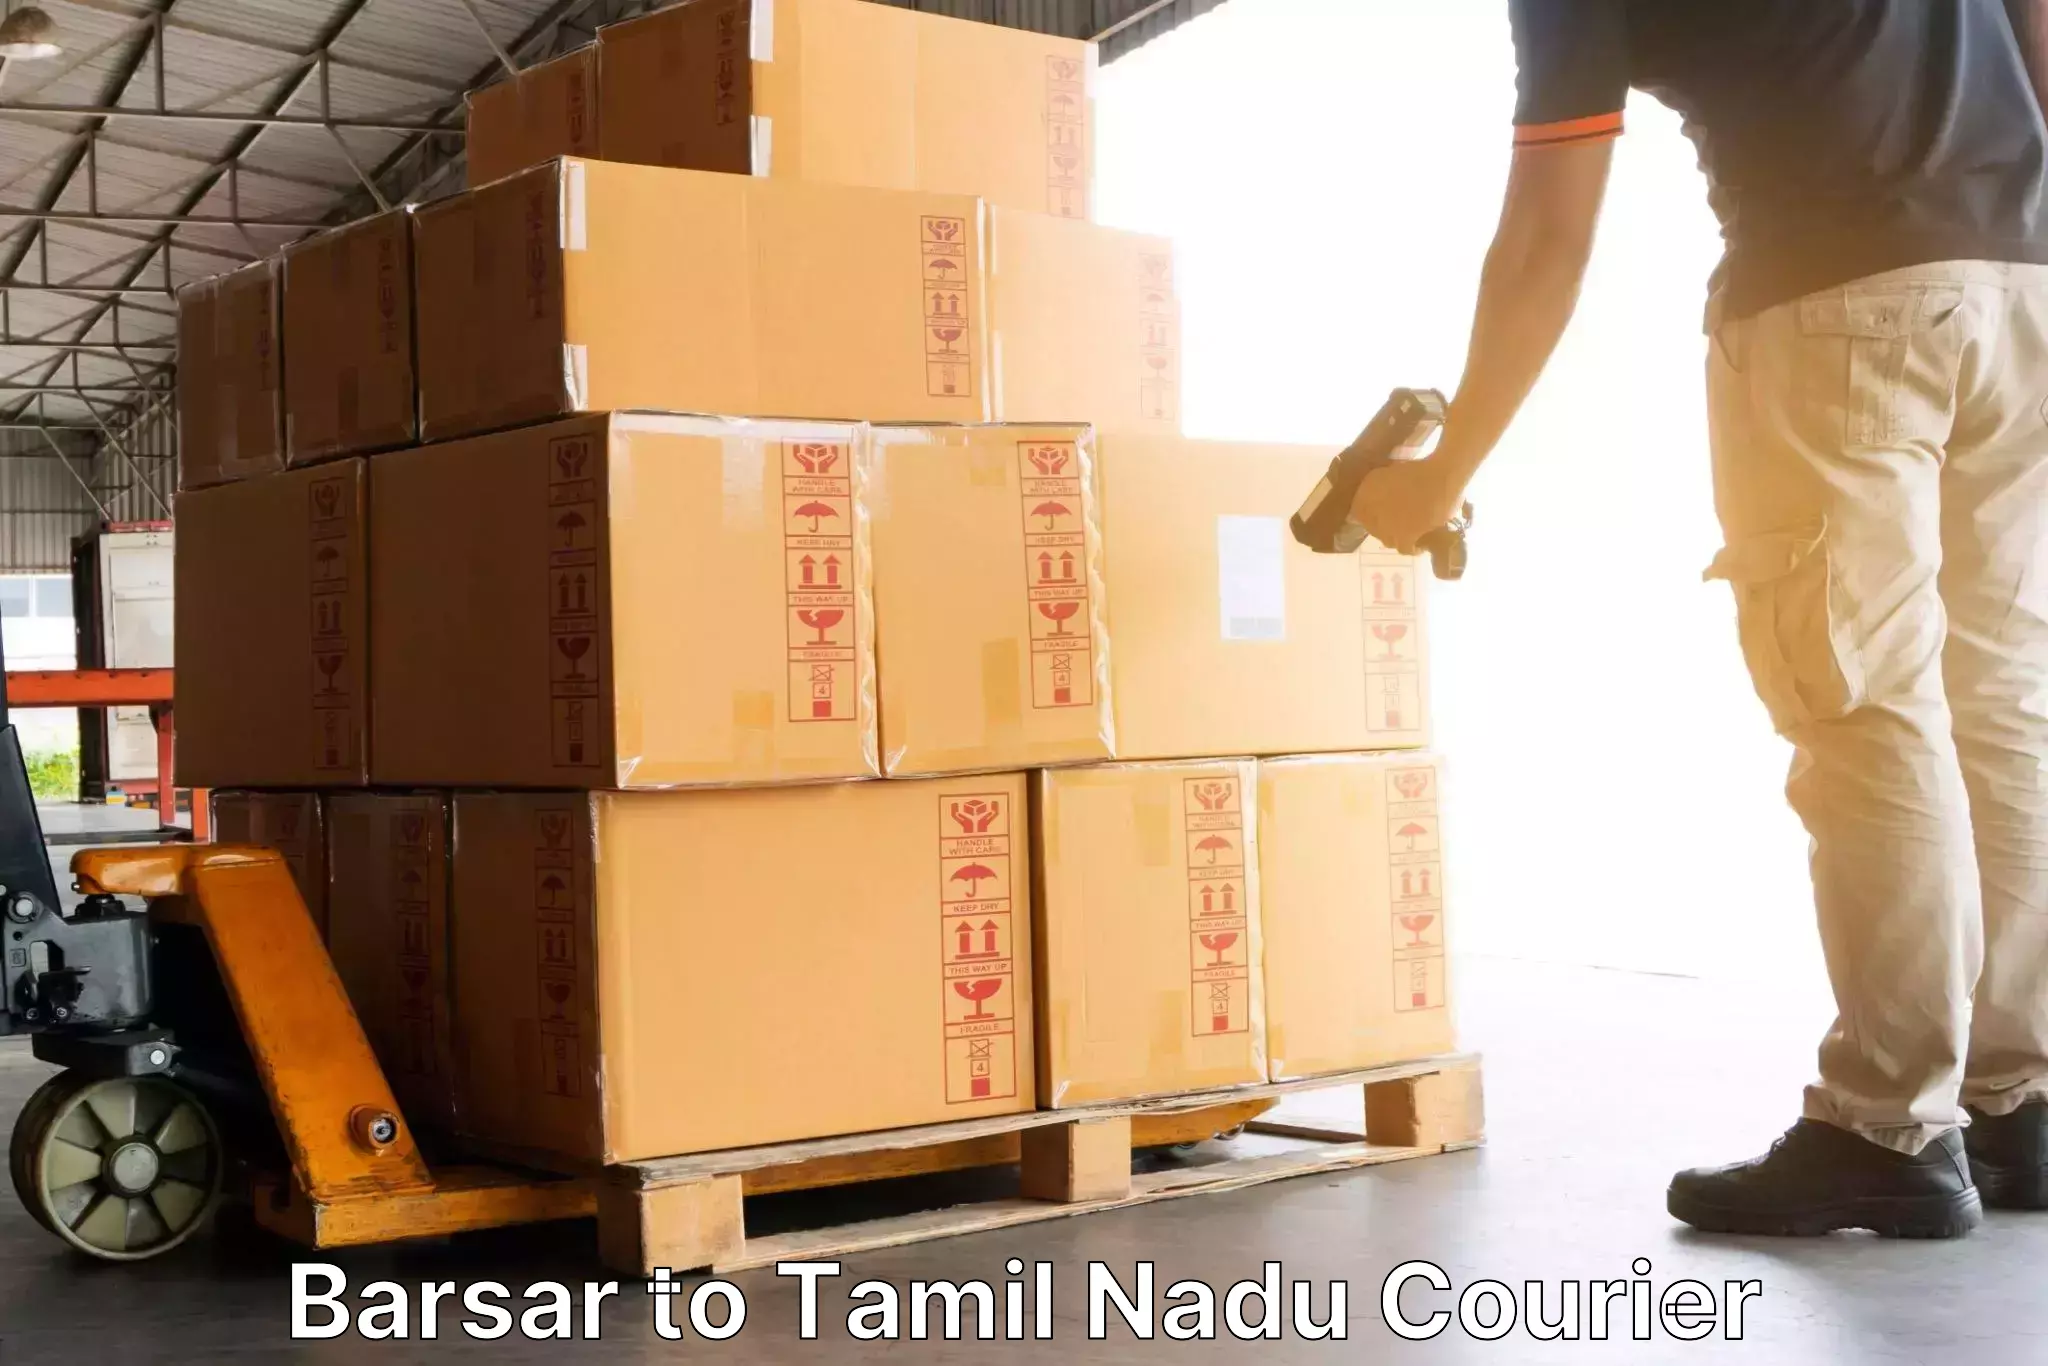 Global courier networks Barsar to Tamil Nadu